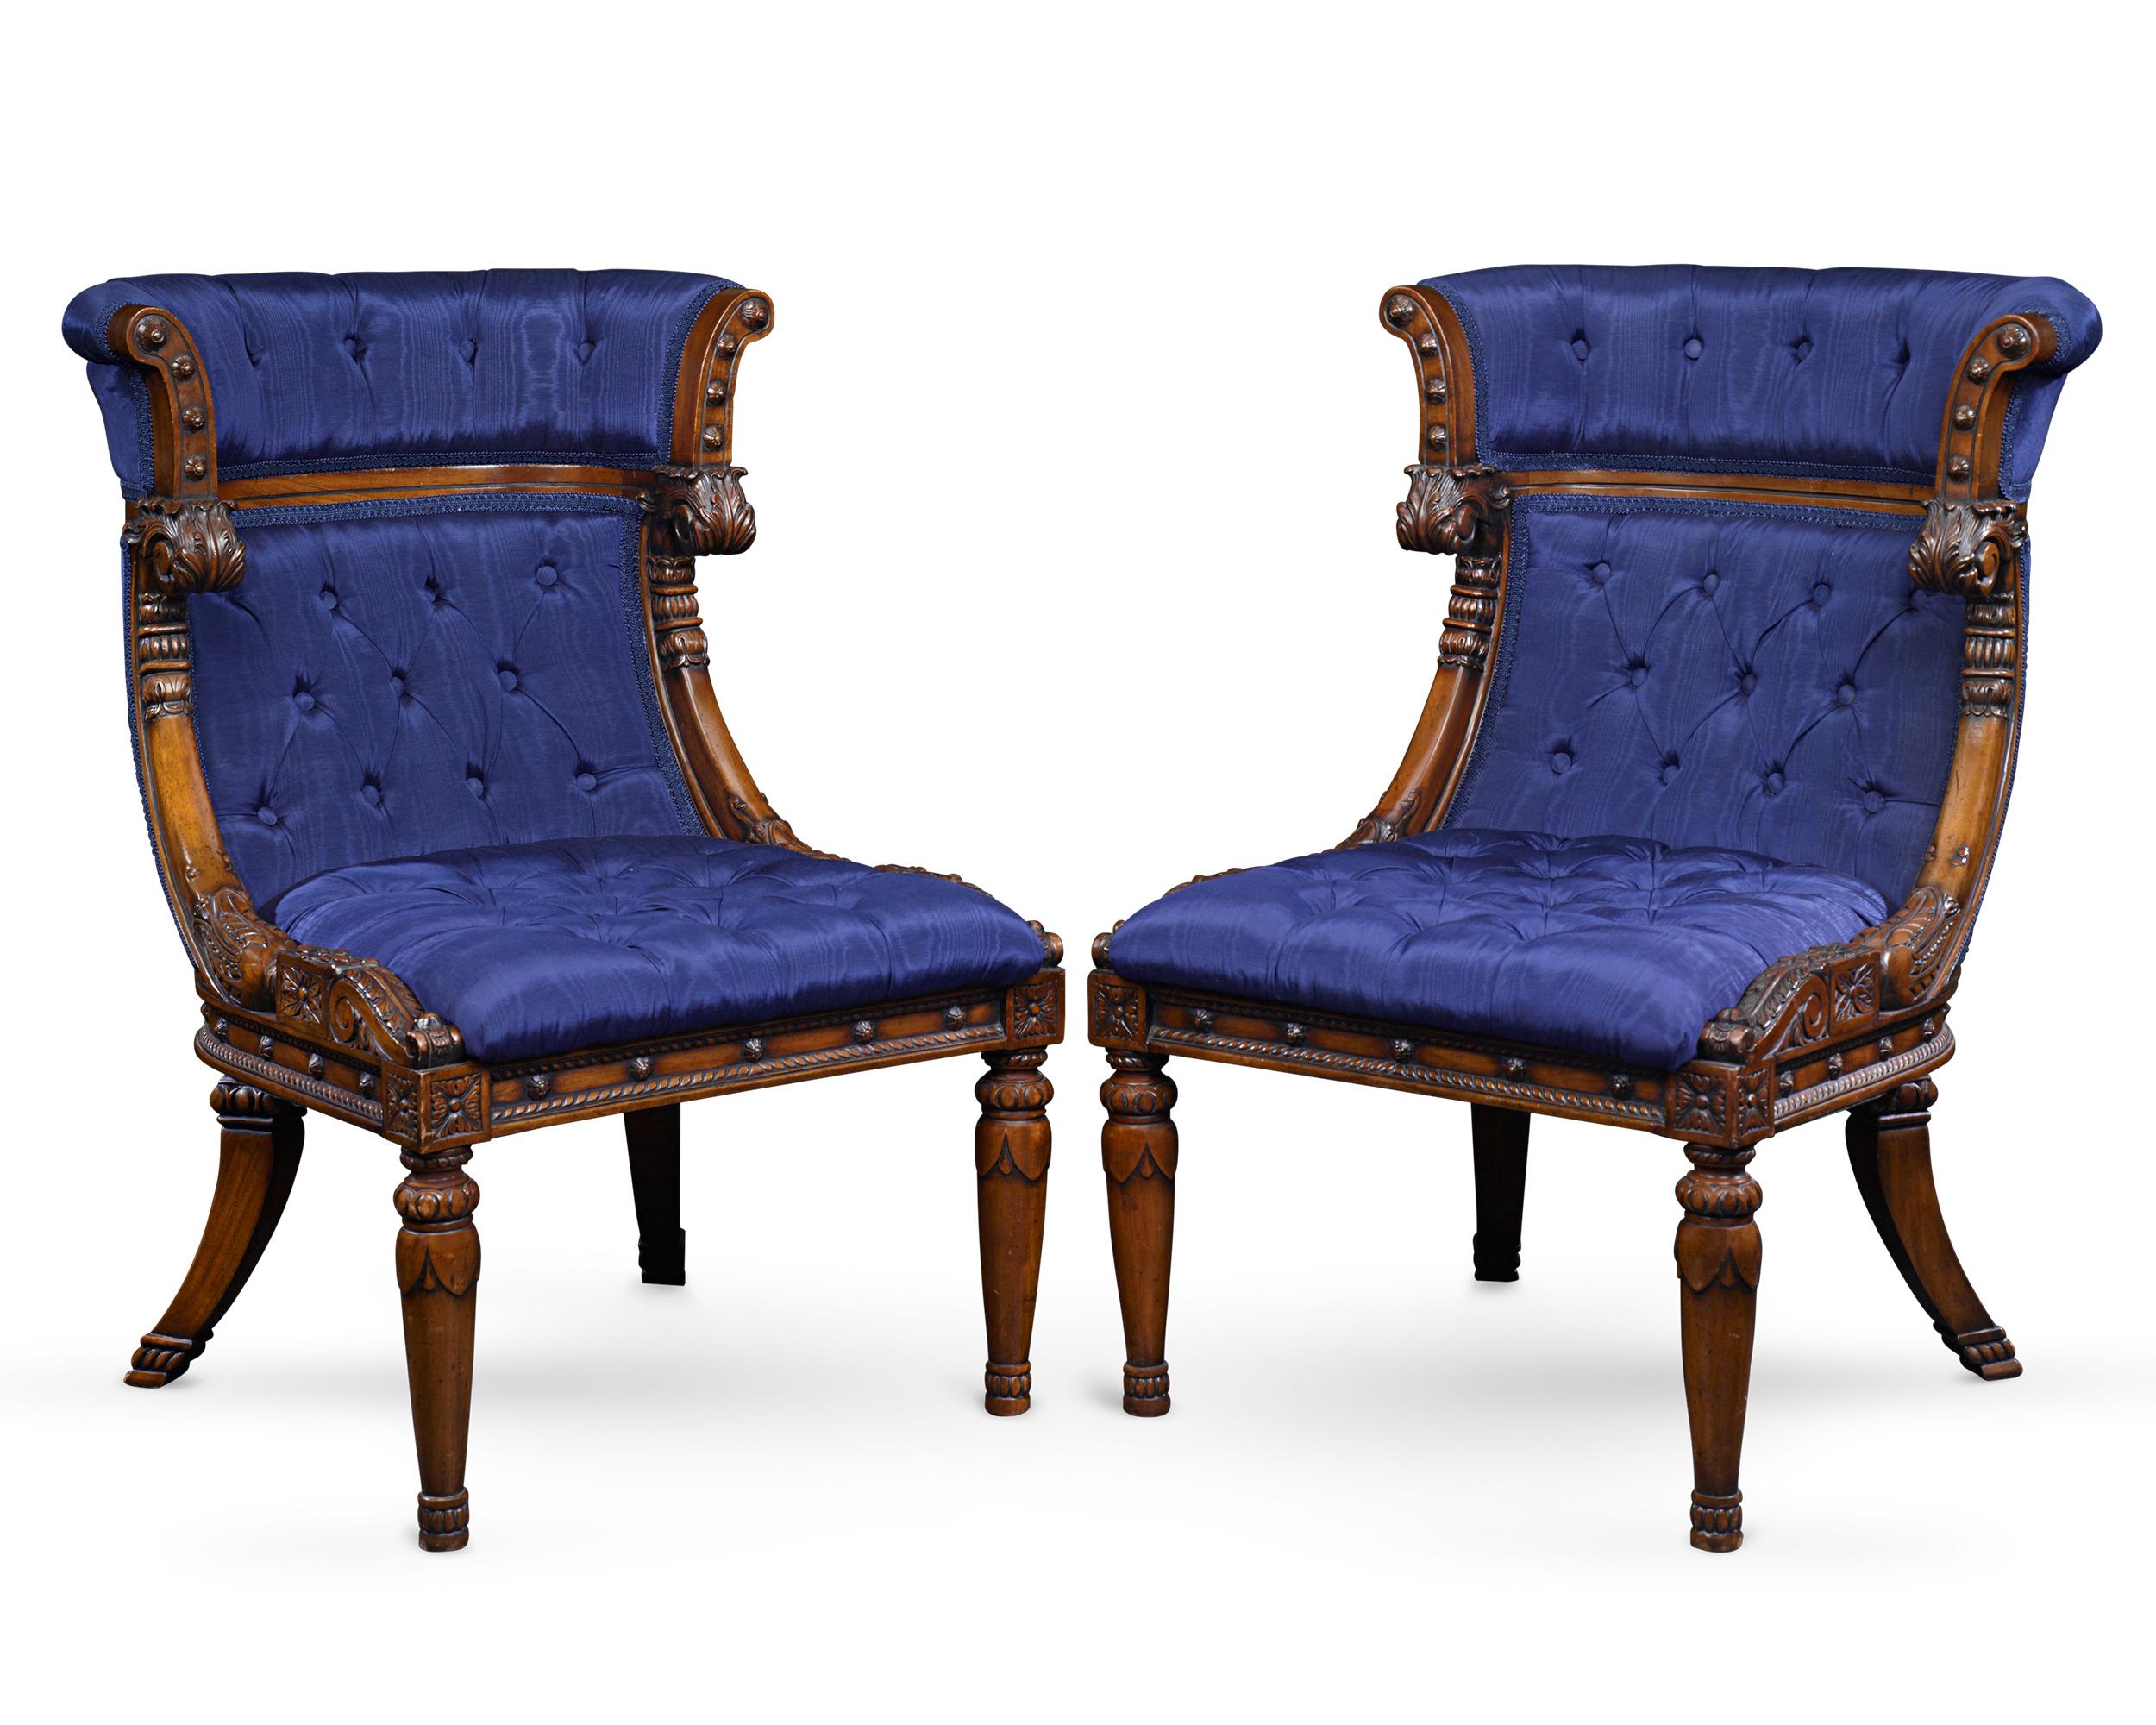 Le magnifique design de cette paire de chaises bergères françaises rembourrées illustre l'art et l'élégance de la période Empire. Présentant des proportions parfaites, les chaises sont rehaussées par un rembourrage bleu royal et un acajou sculpté de